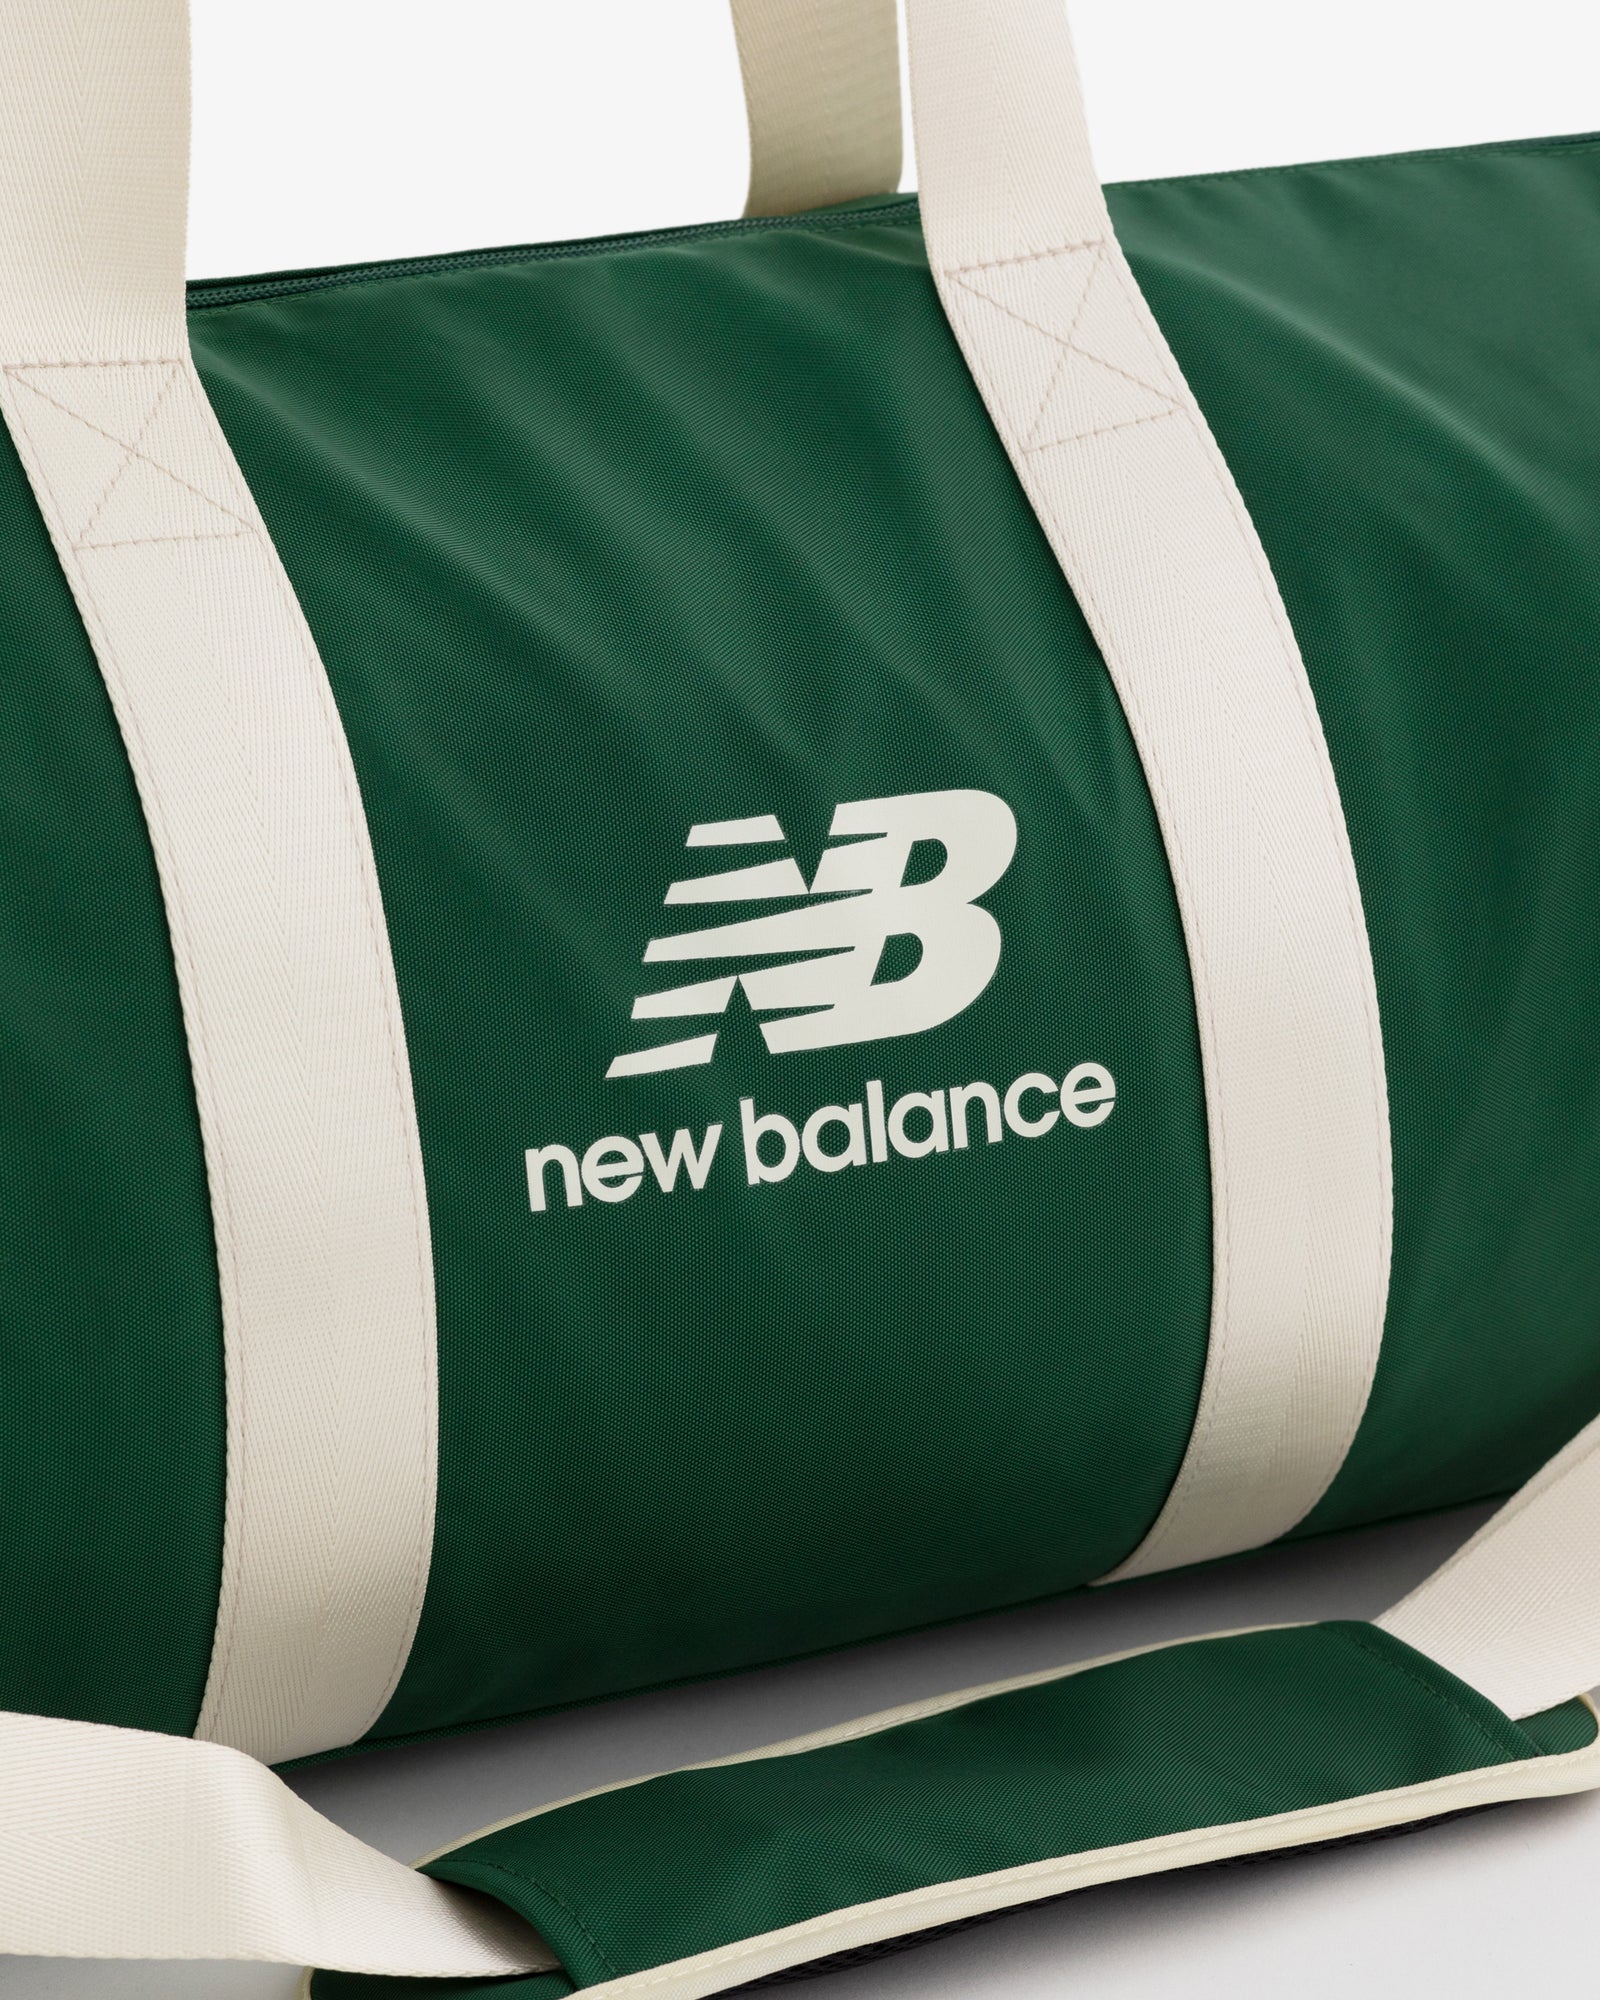 ALD / New Balance SONNY NY Duffle Bag